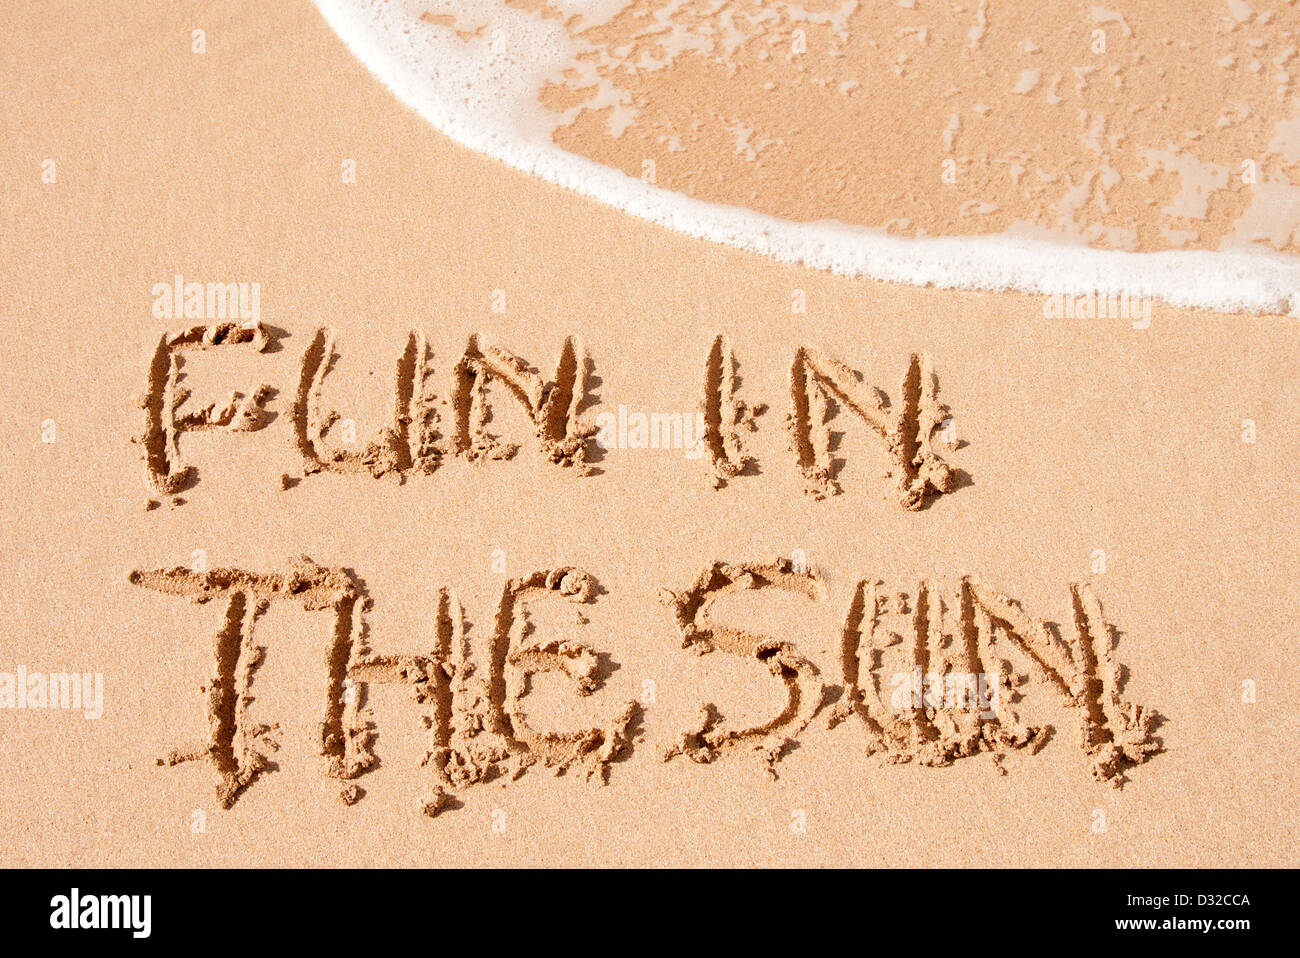 Divertimento al sole scritto di sabbia su una spiaggia Foto Stock